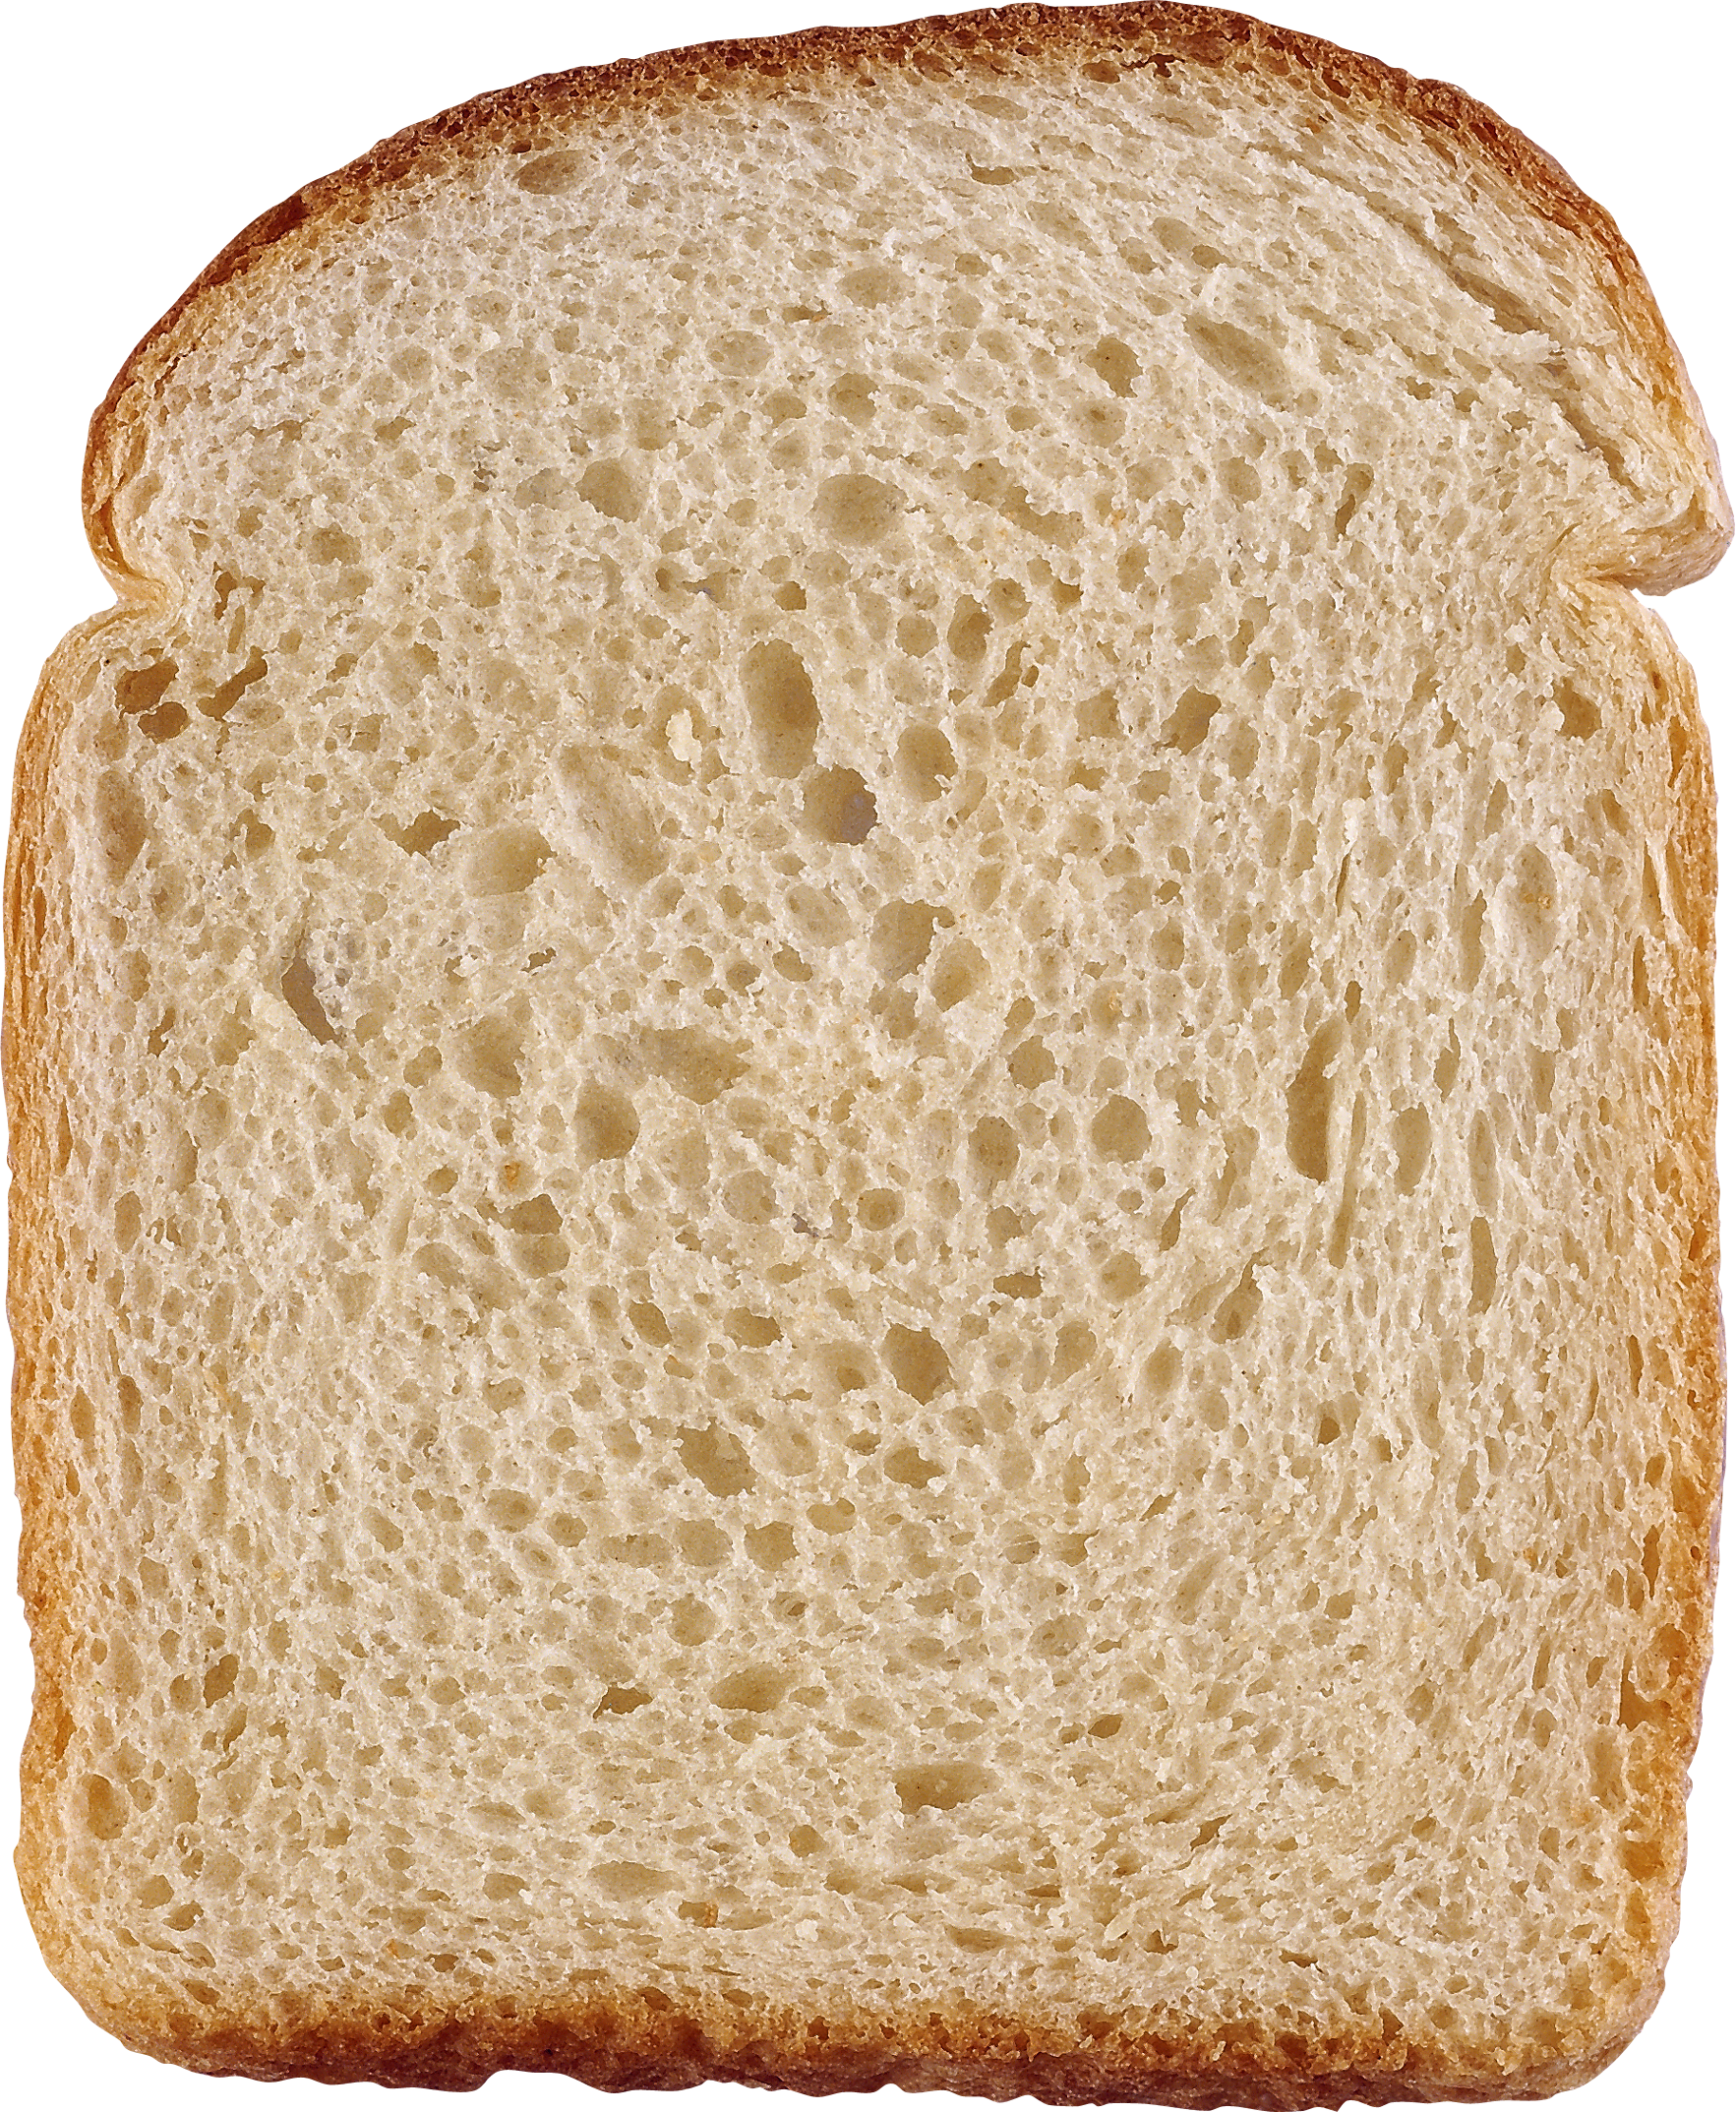 Susamlı ekmek